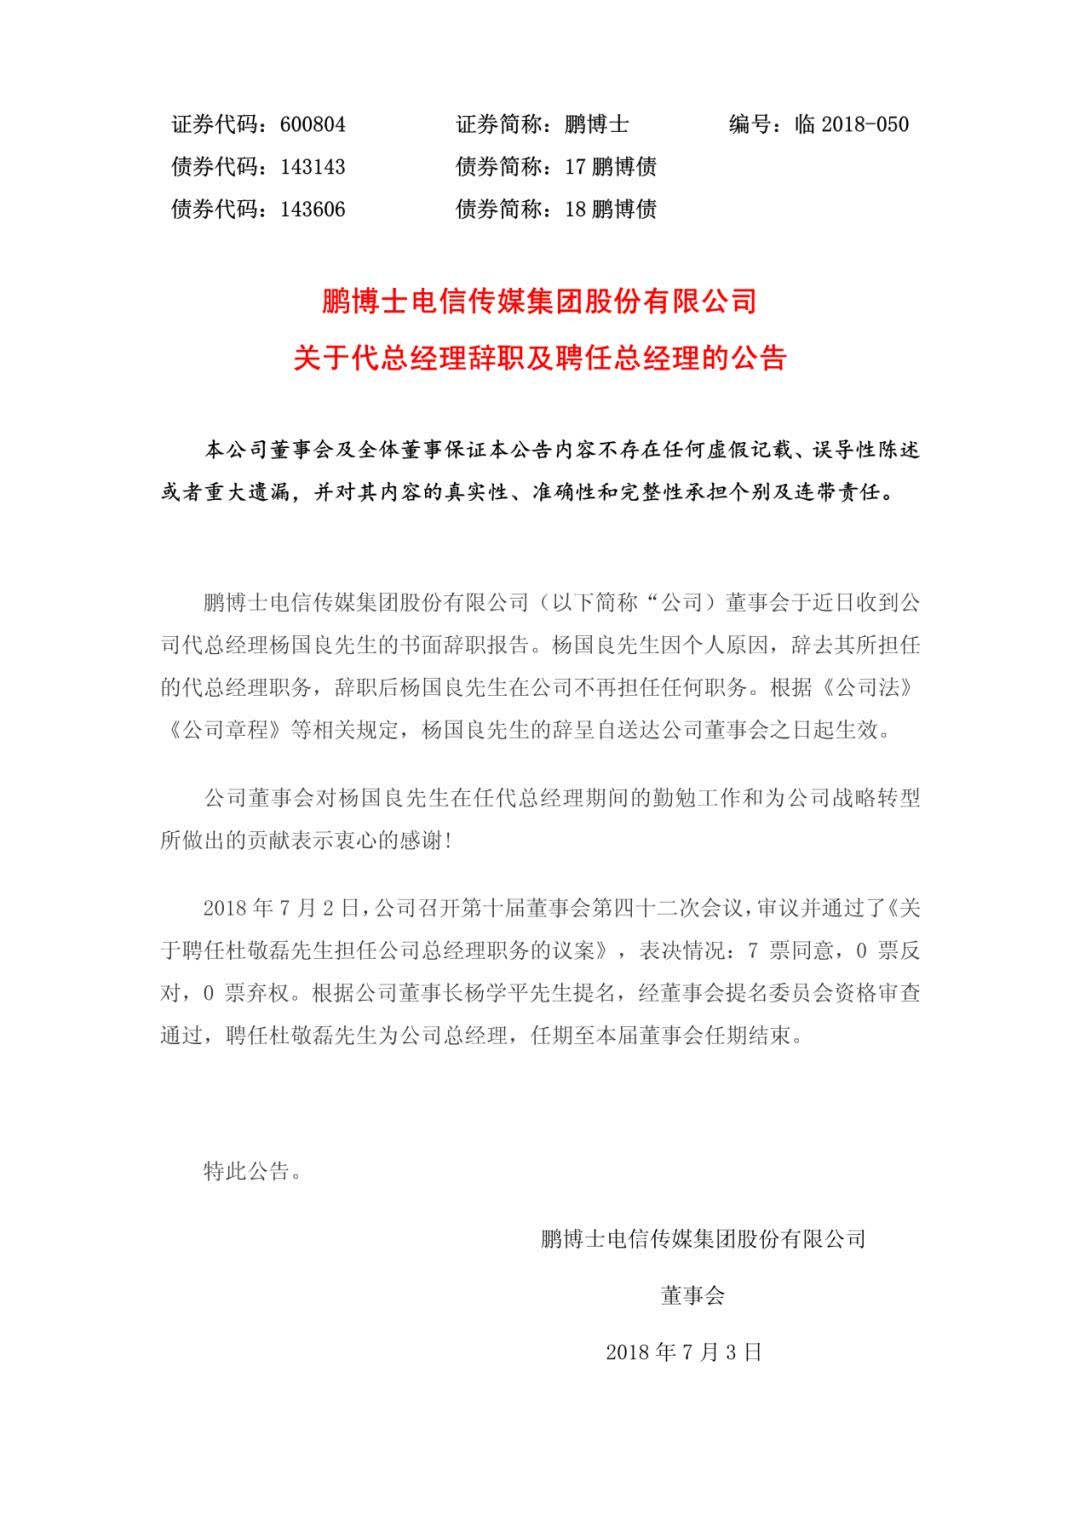 鹏博士代总经理杨国良辞职 新老板身兼数职